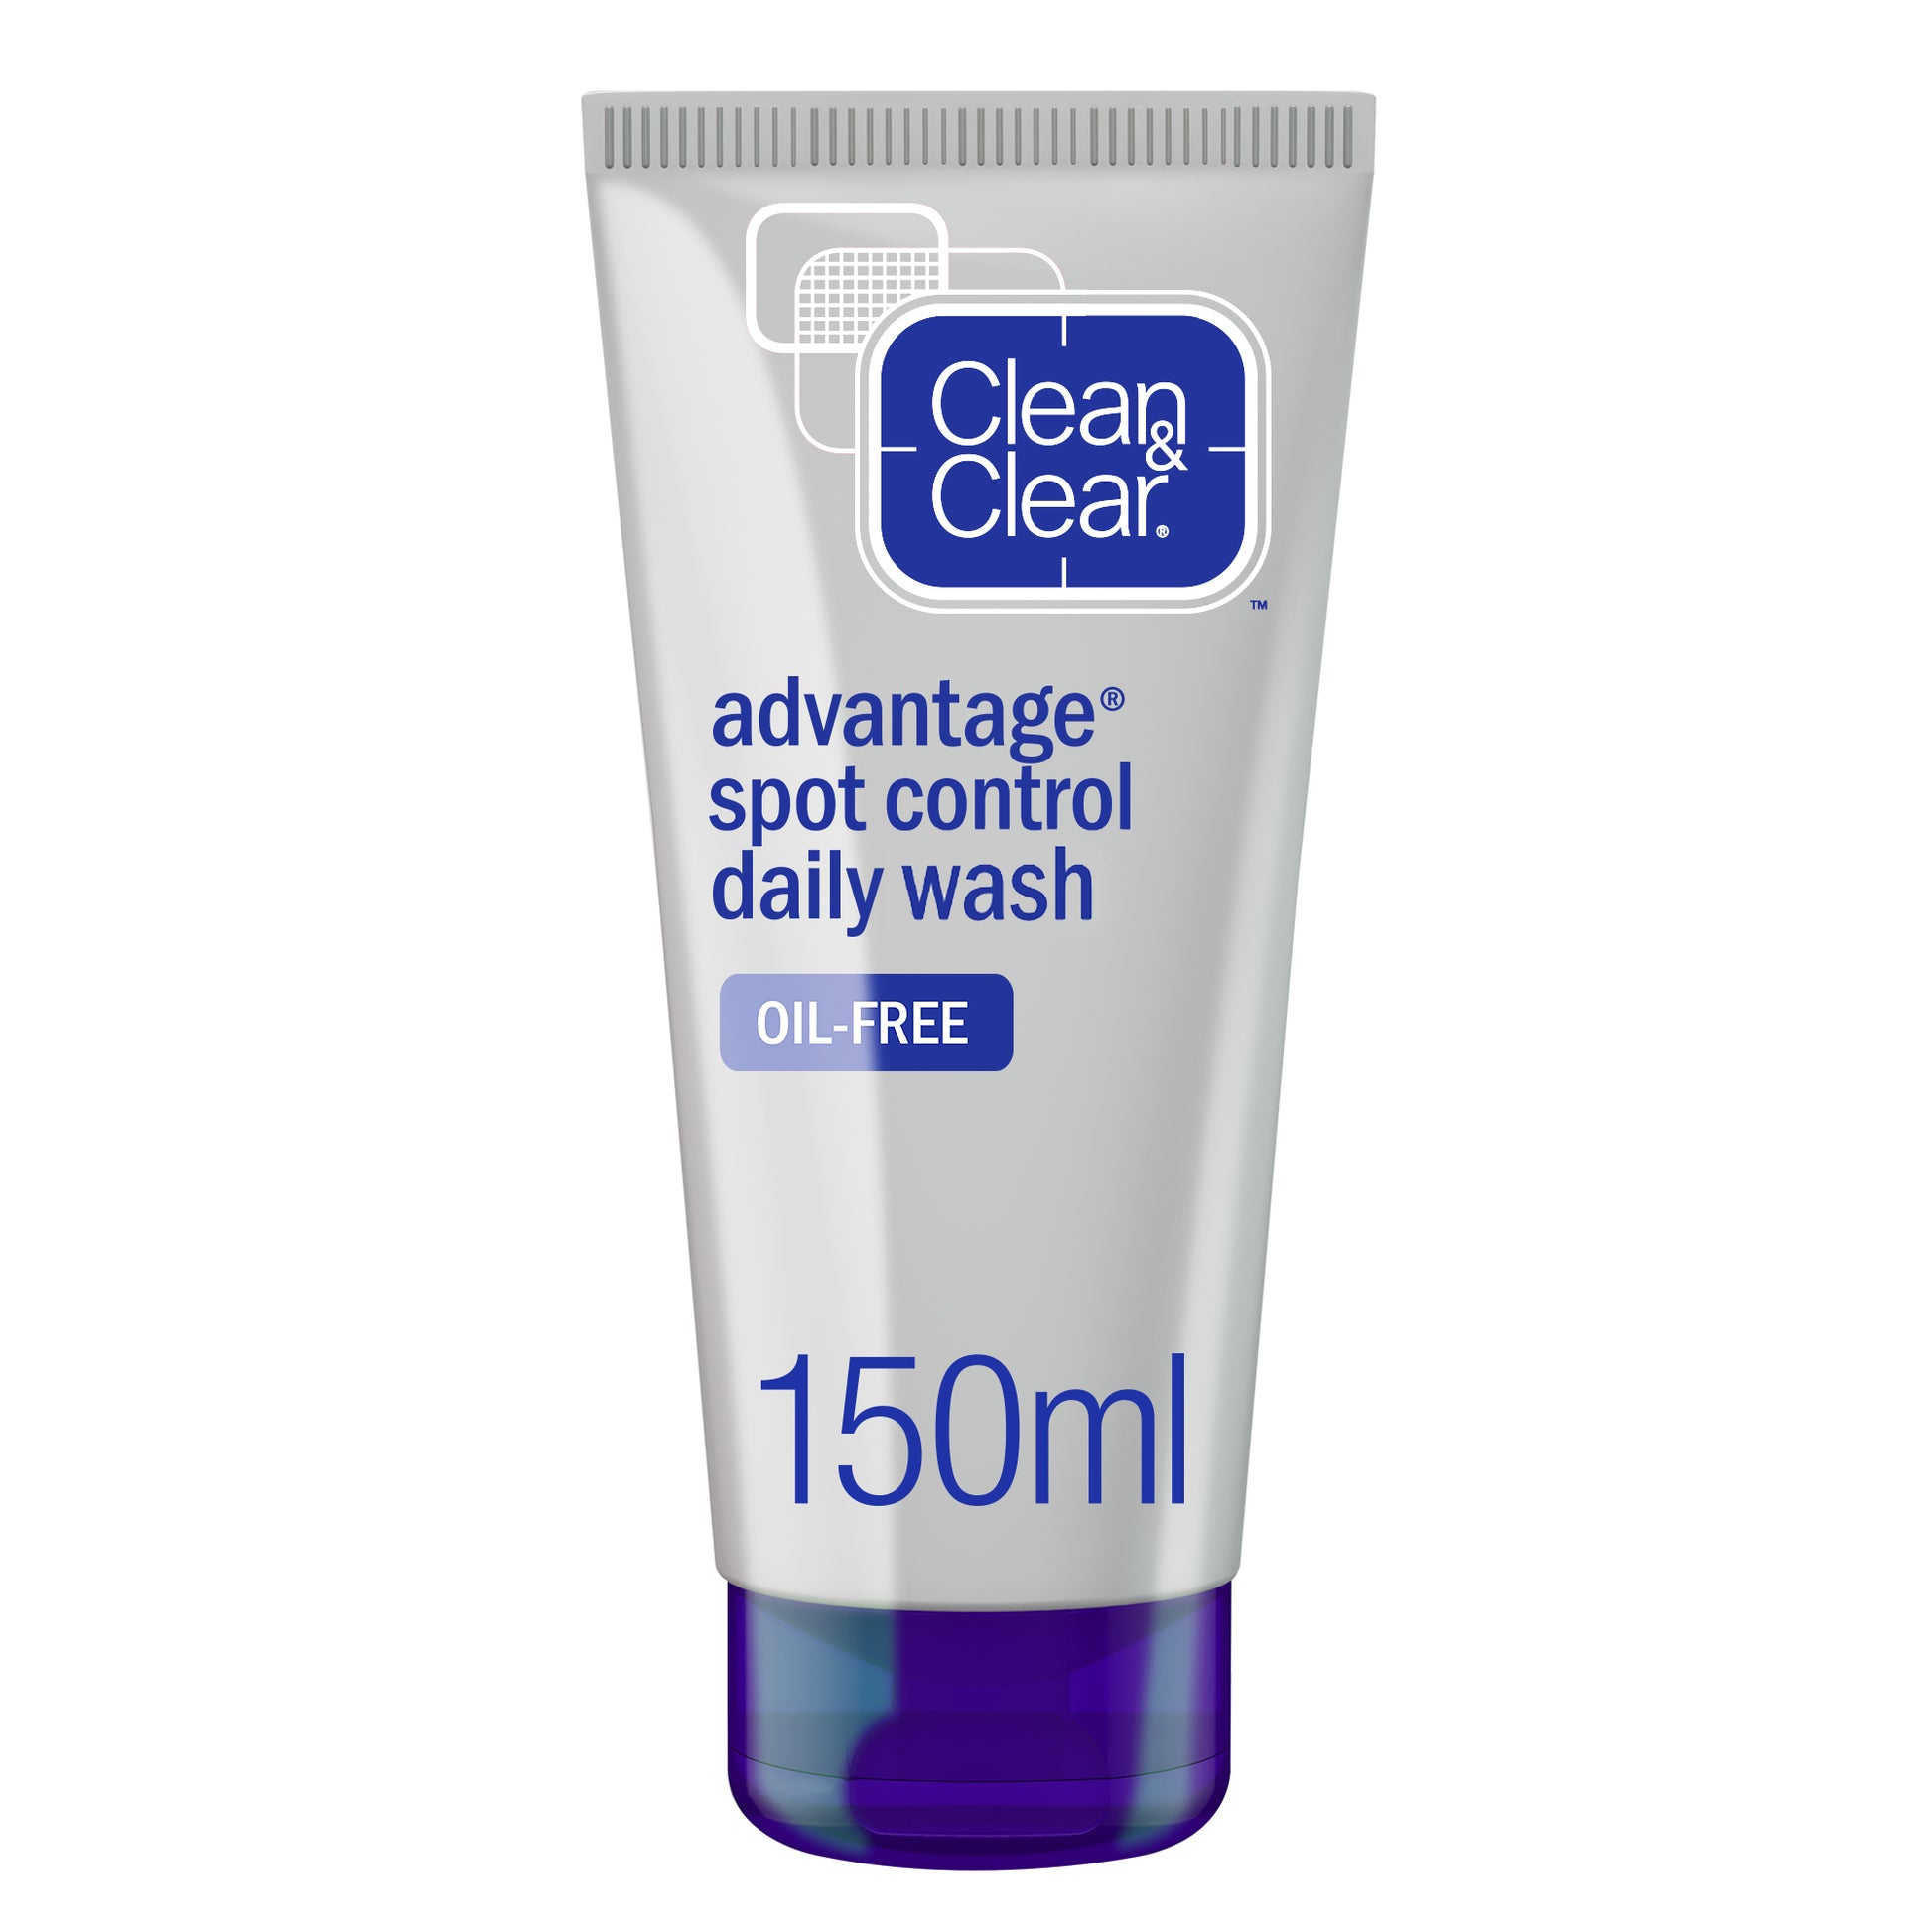 Clean & clear, daily facial wash, advantage, spot control, 150ml